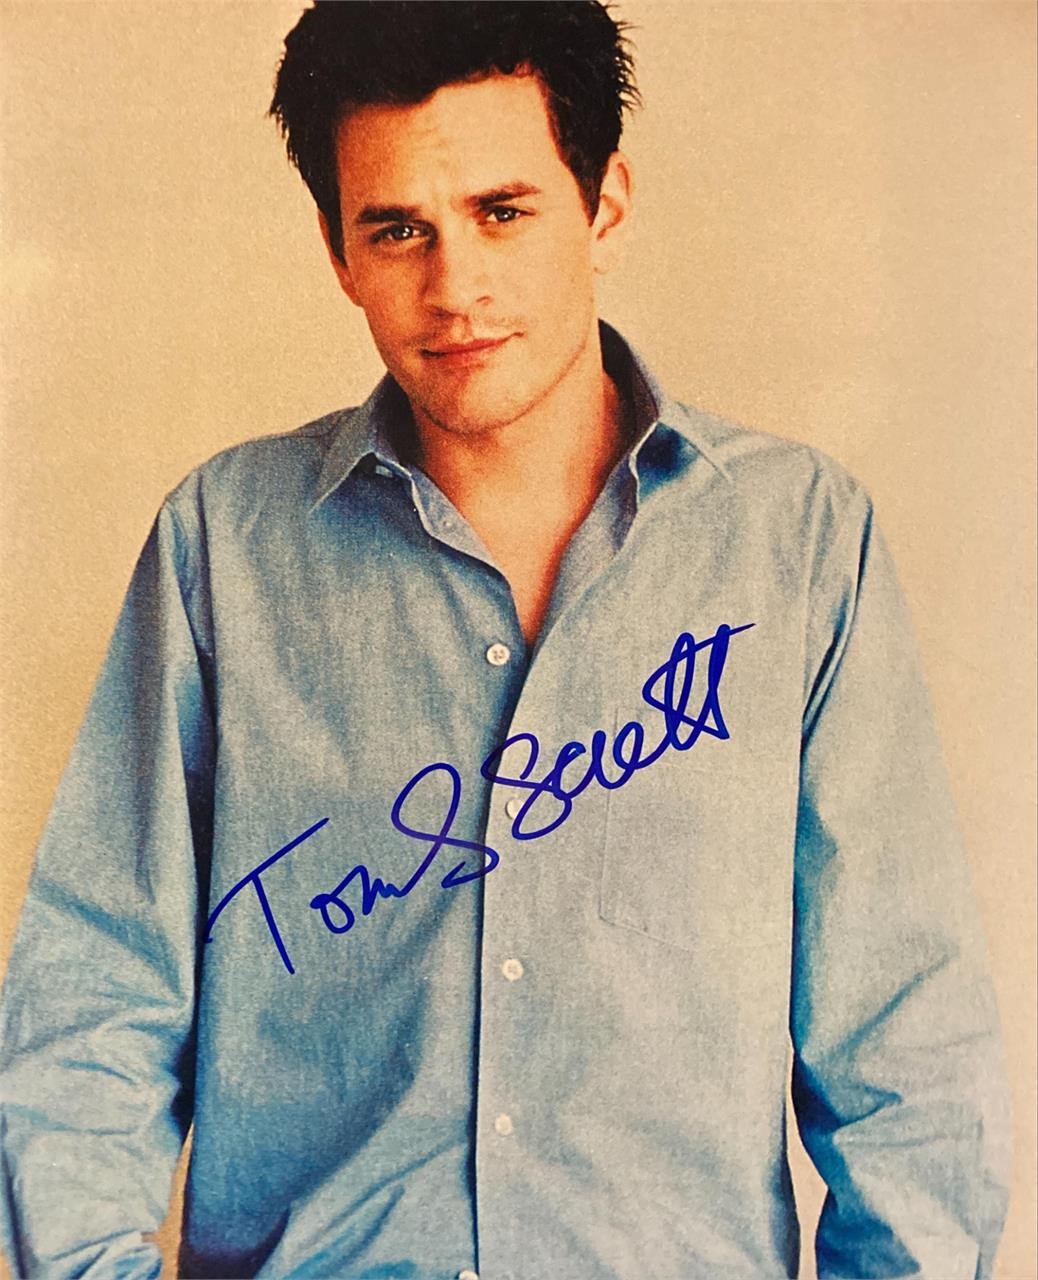 Tom Everett Scott
signed photo